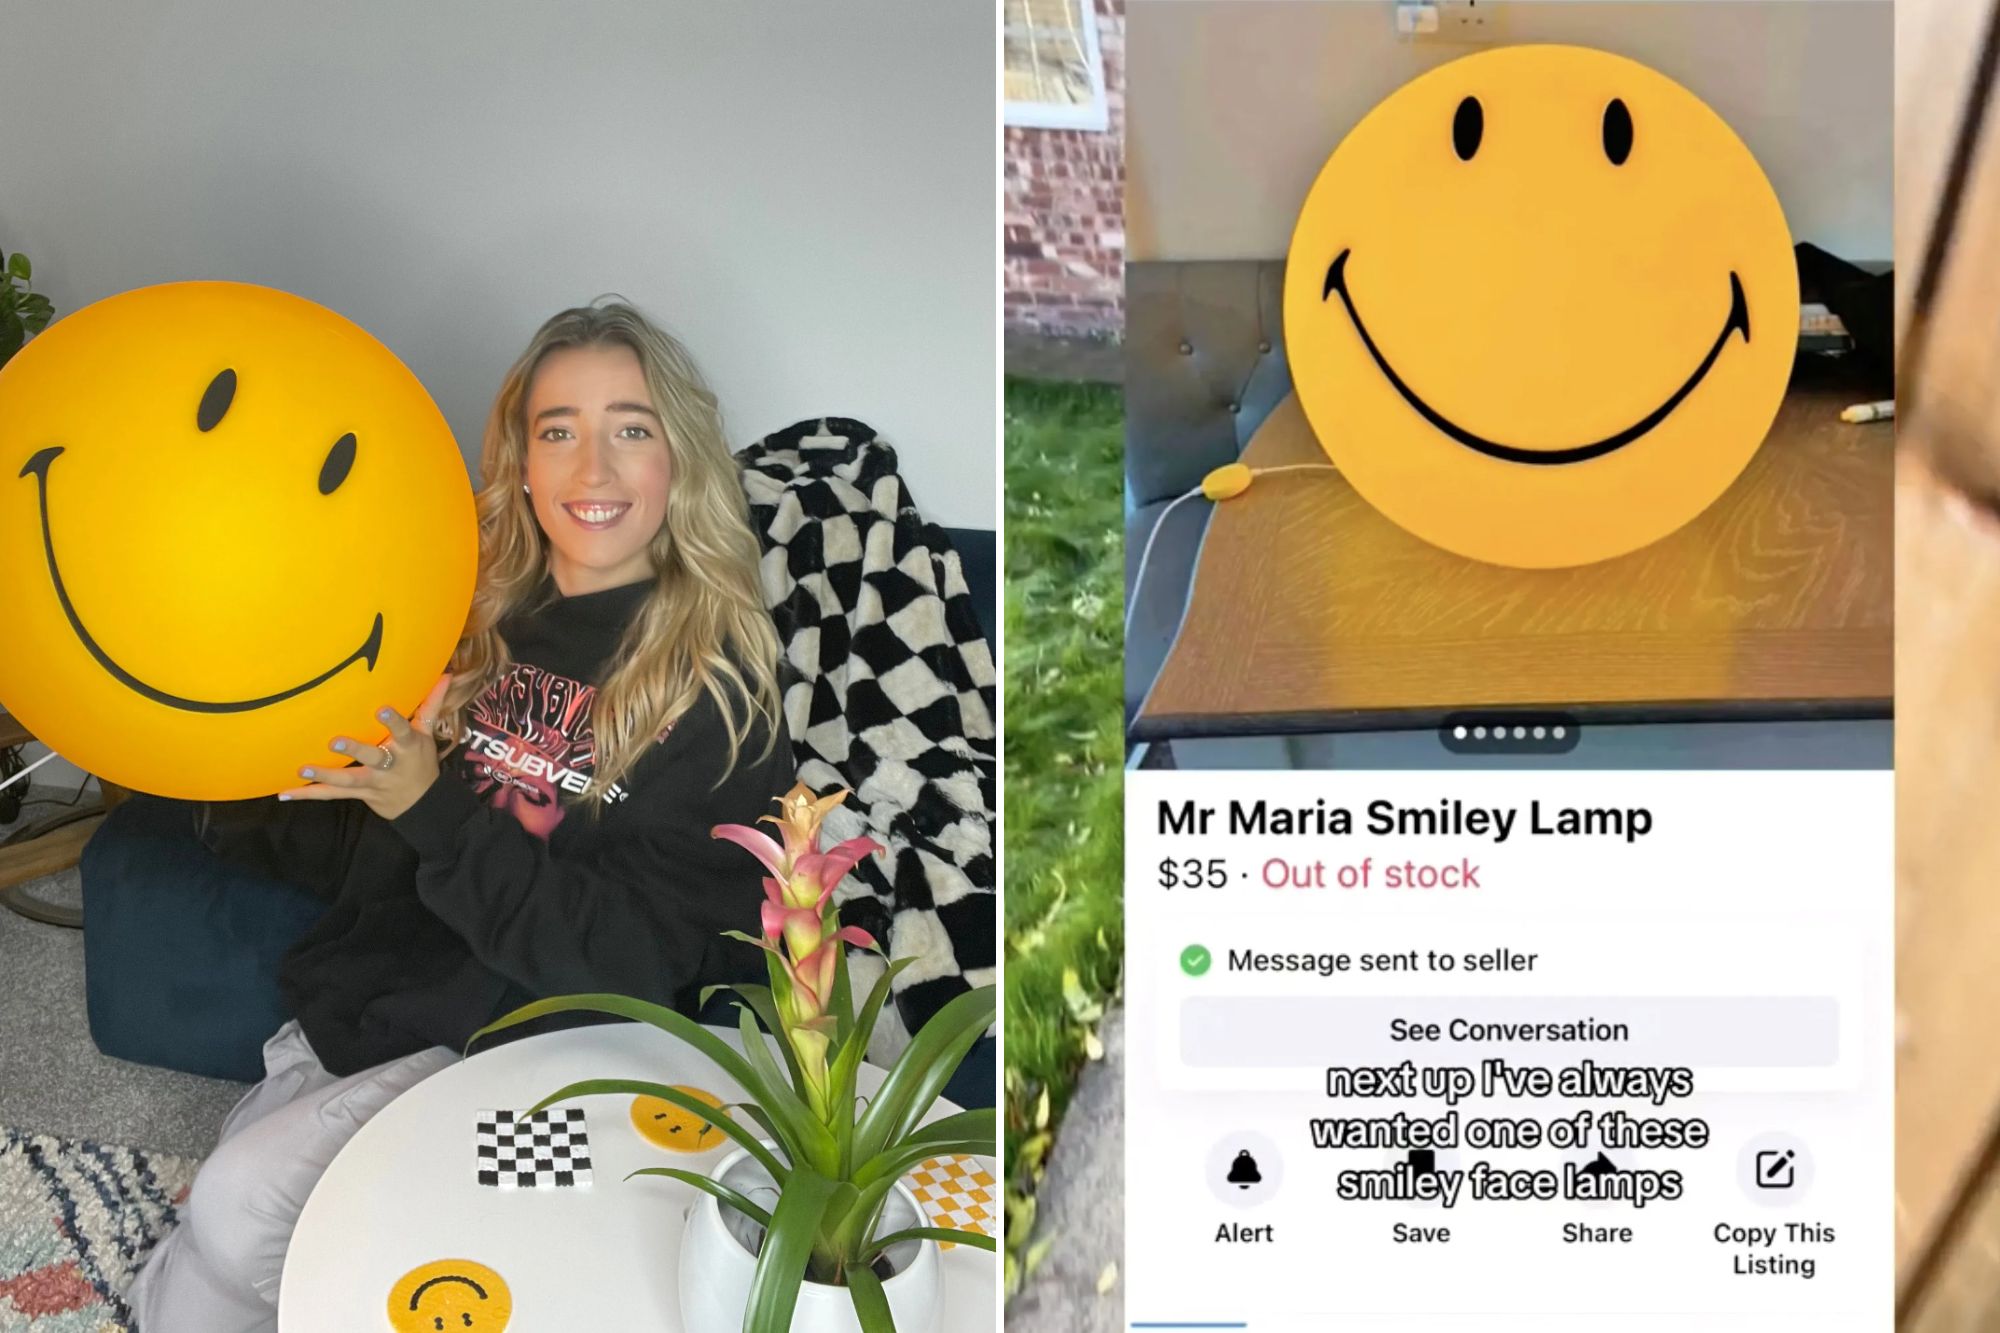 Beckys Smiley-Lampe kostete sie 100 £ weniger, als wenn sie sie direkt bei Urban Outfitters gekauft hätte